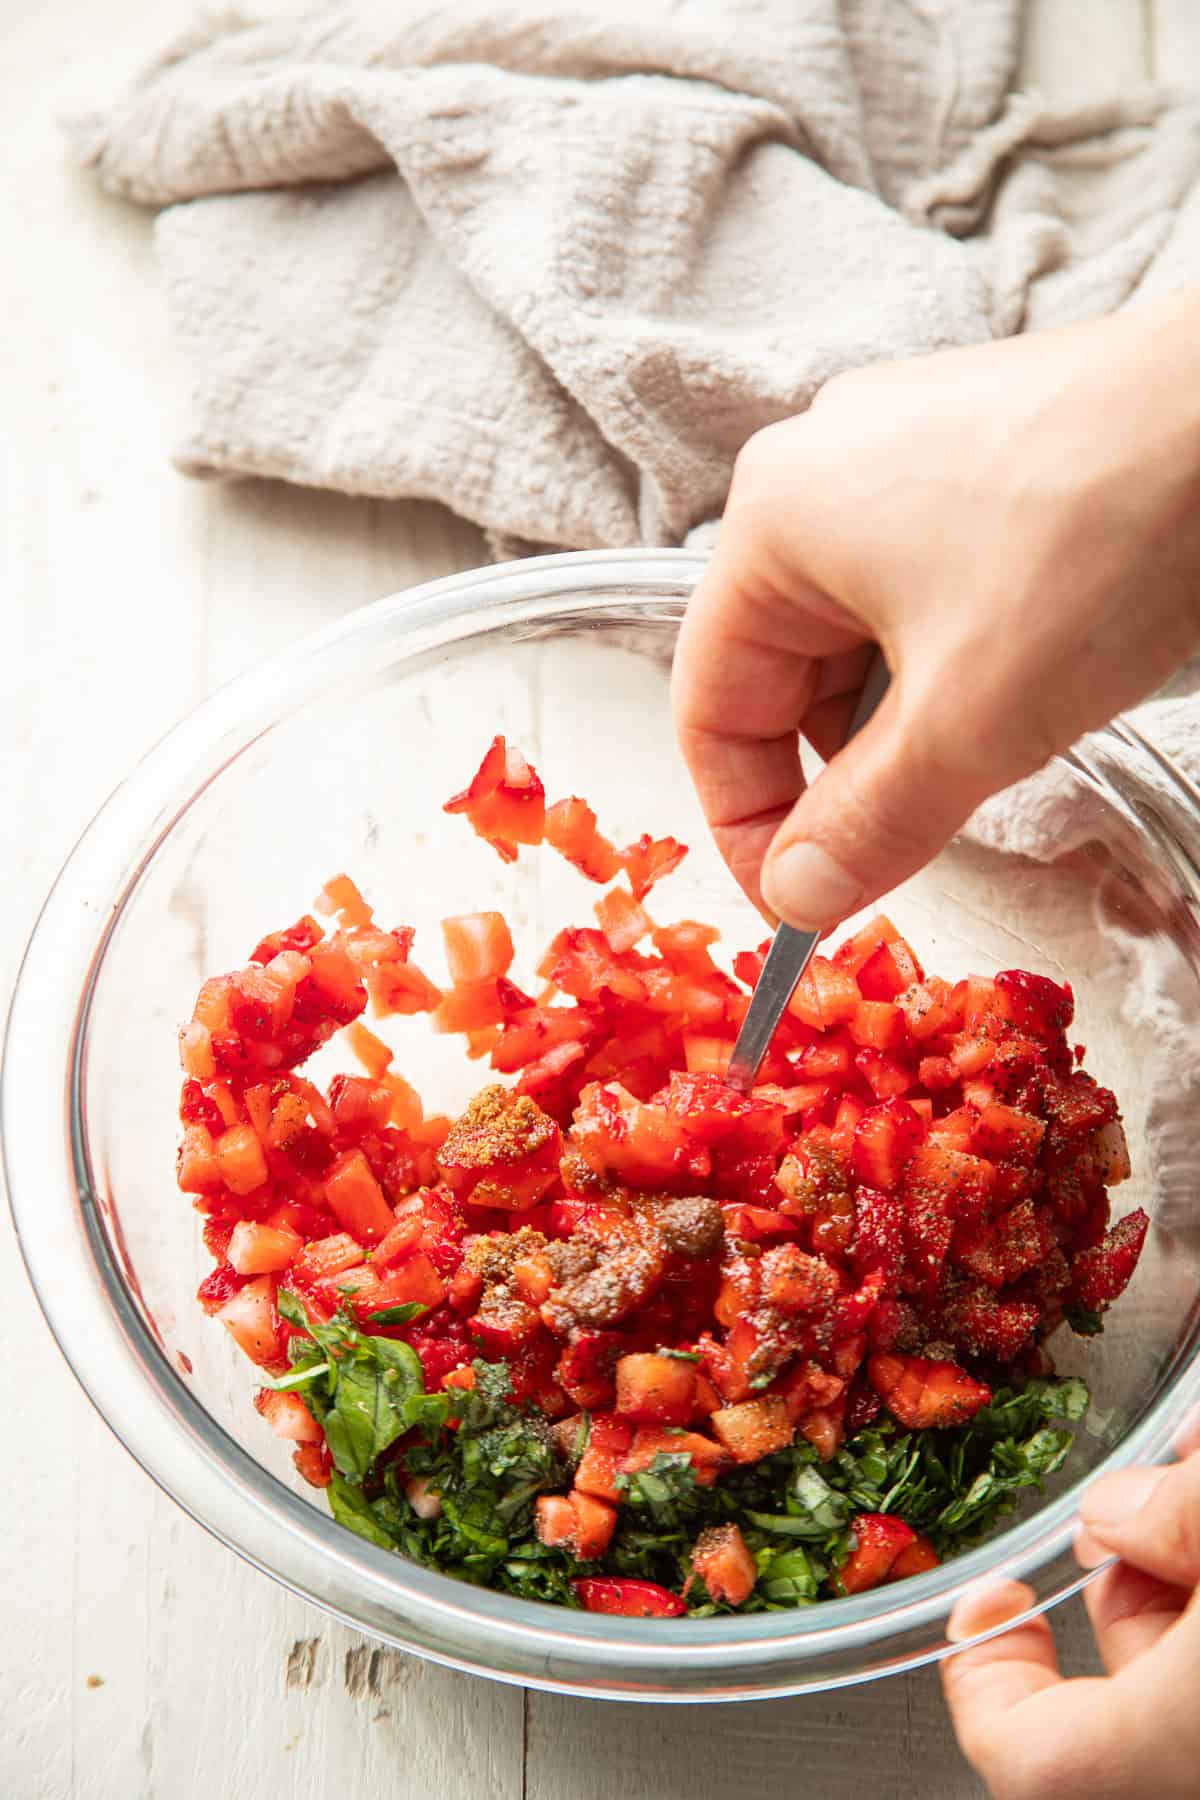 Hand stirring Strawberry Bruschetta ingredients together in a bowl.